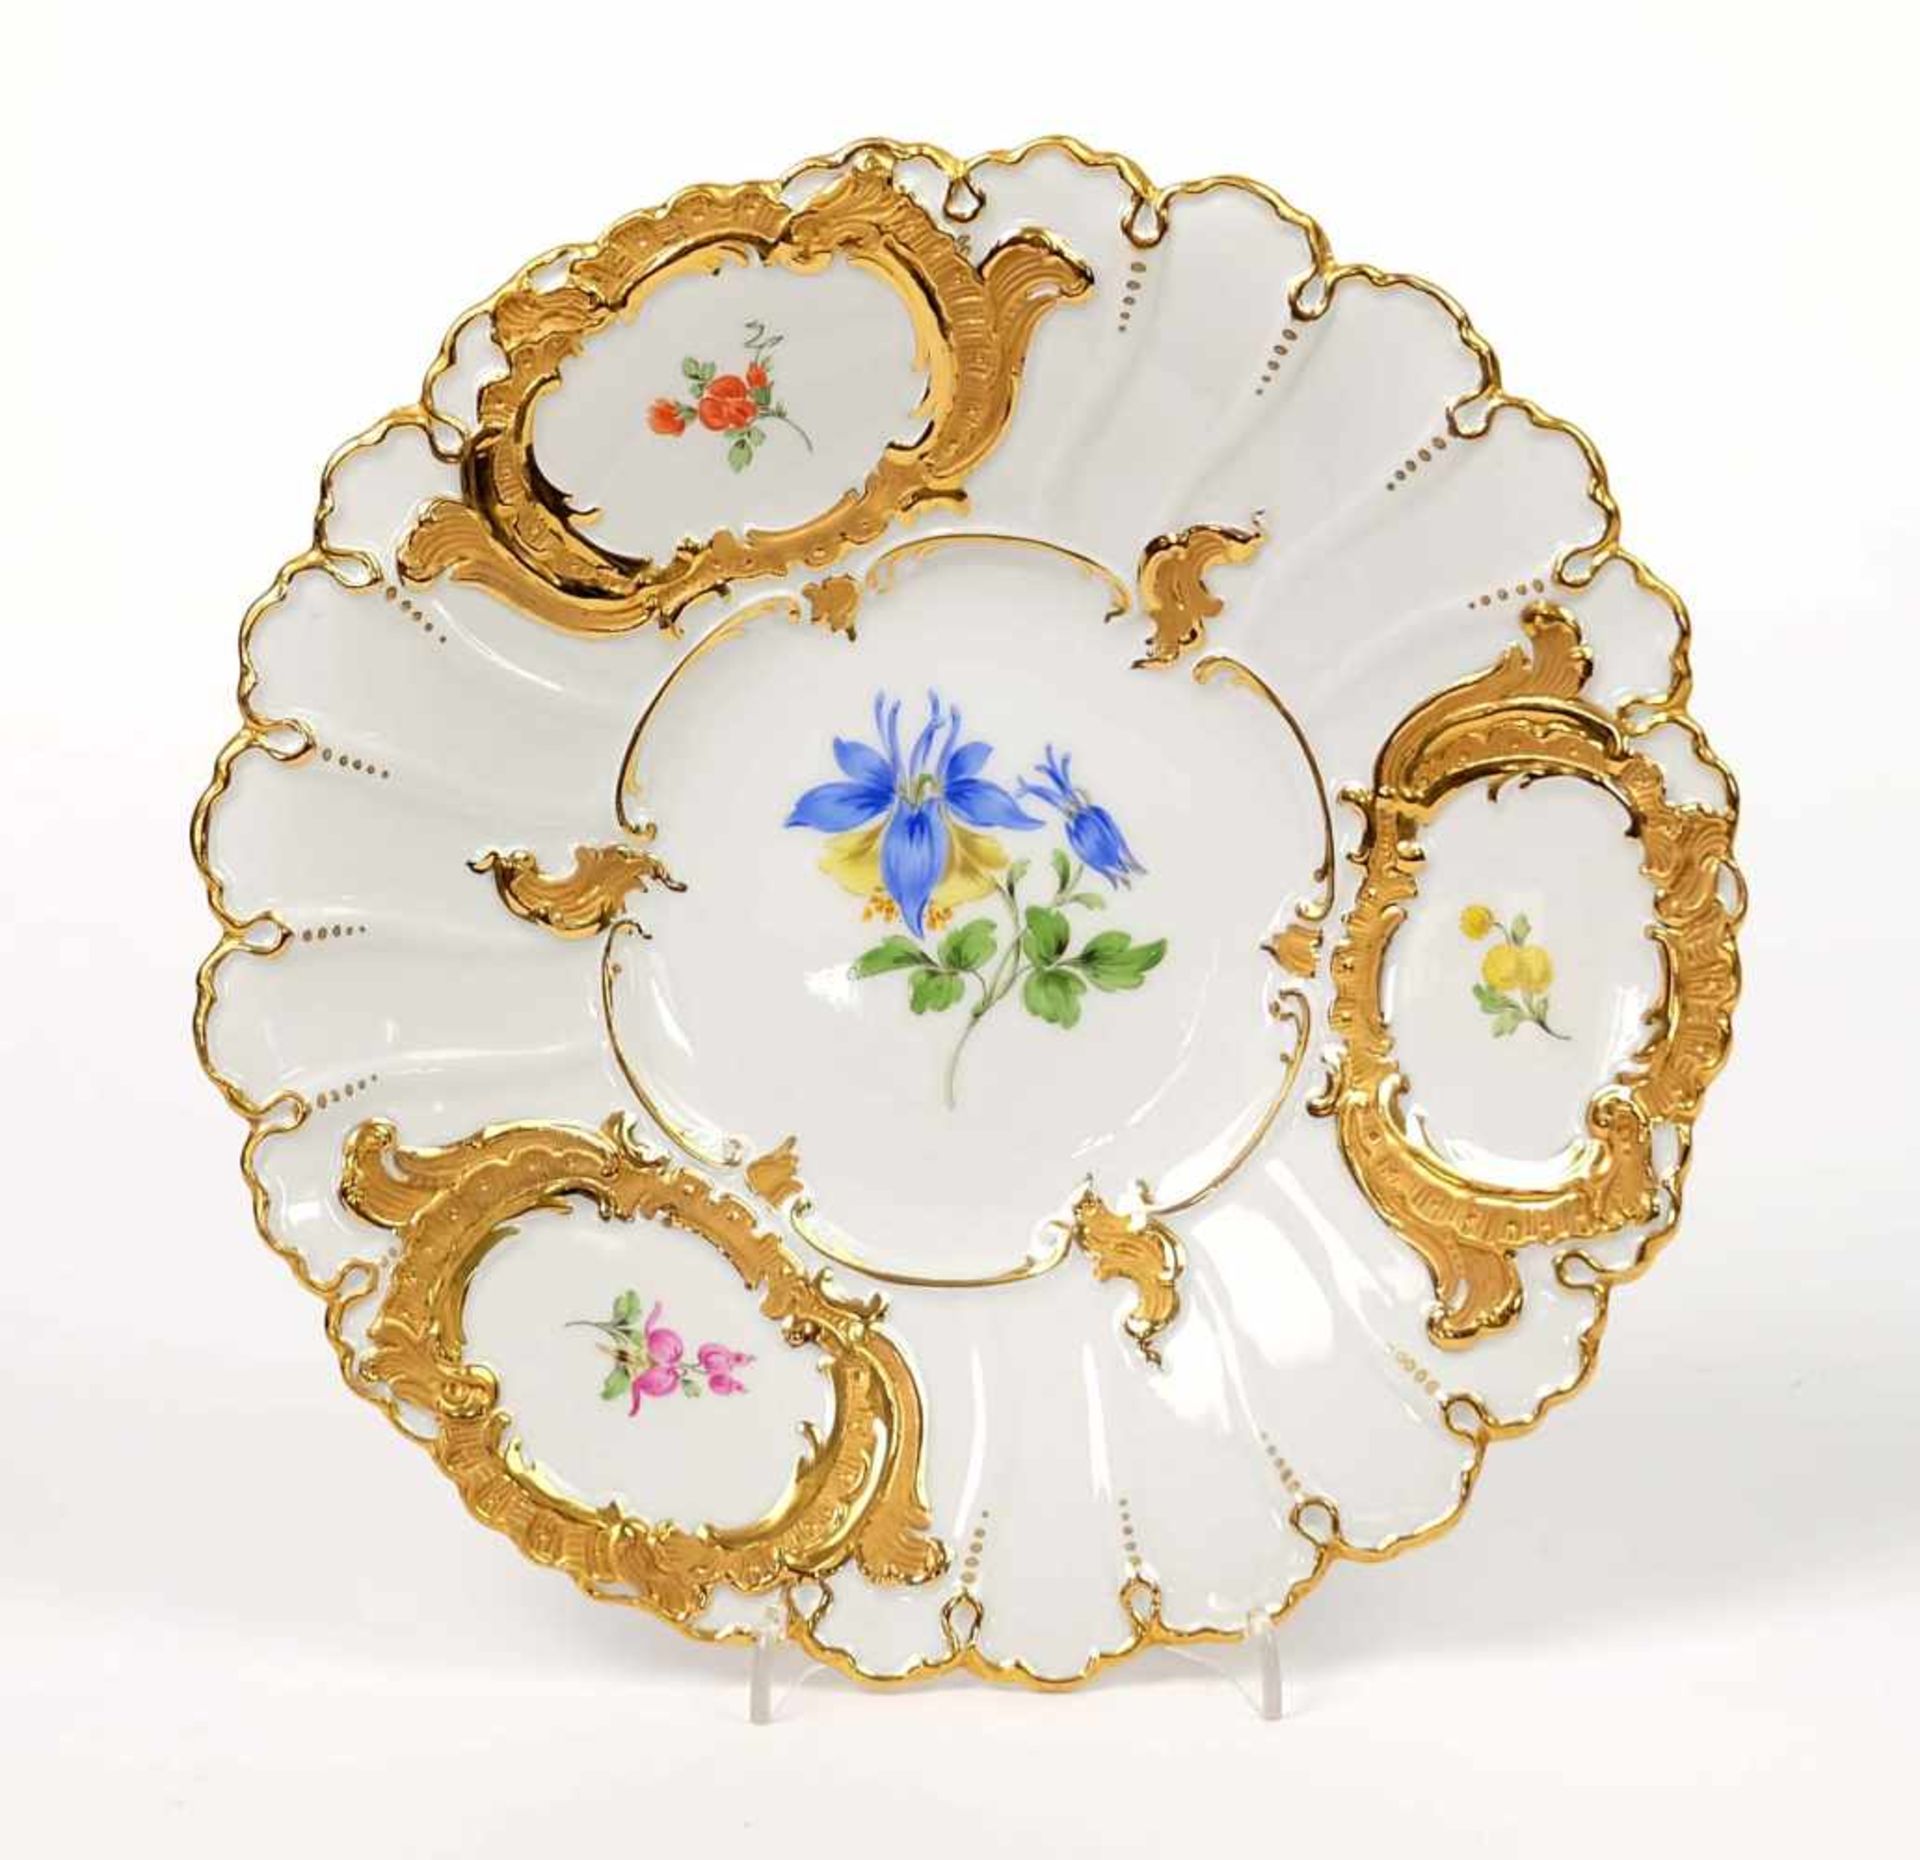 PRUNKTELLER, Staatl. Porzellanmanuf Meissen, Dekor Deutsche Blume, teilvergoldet bzw -silhouettiert,